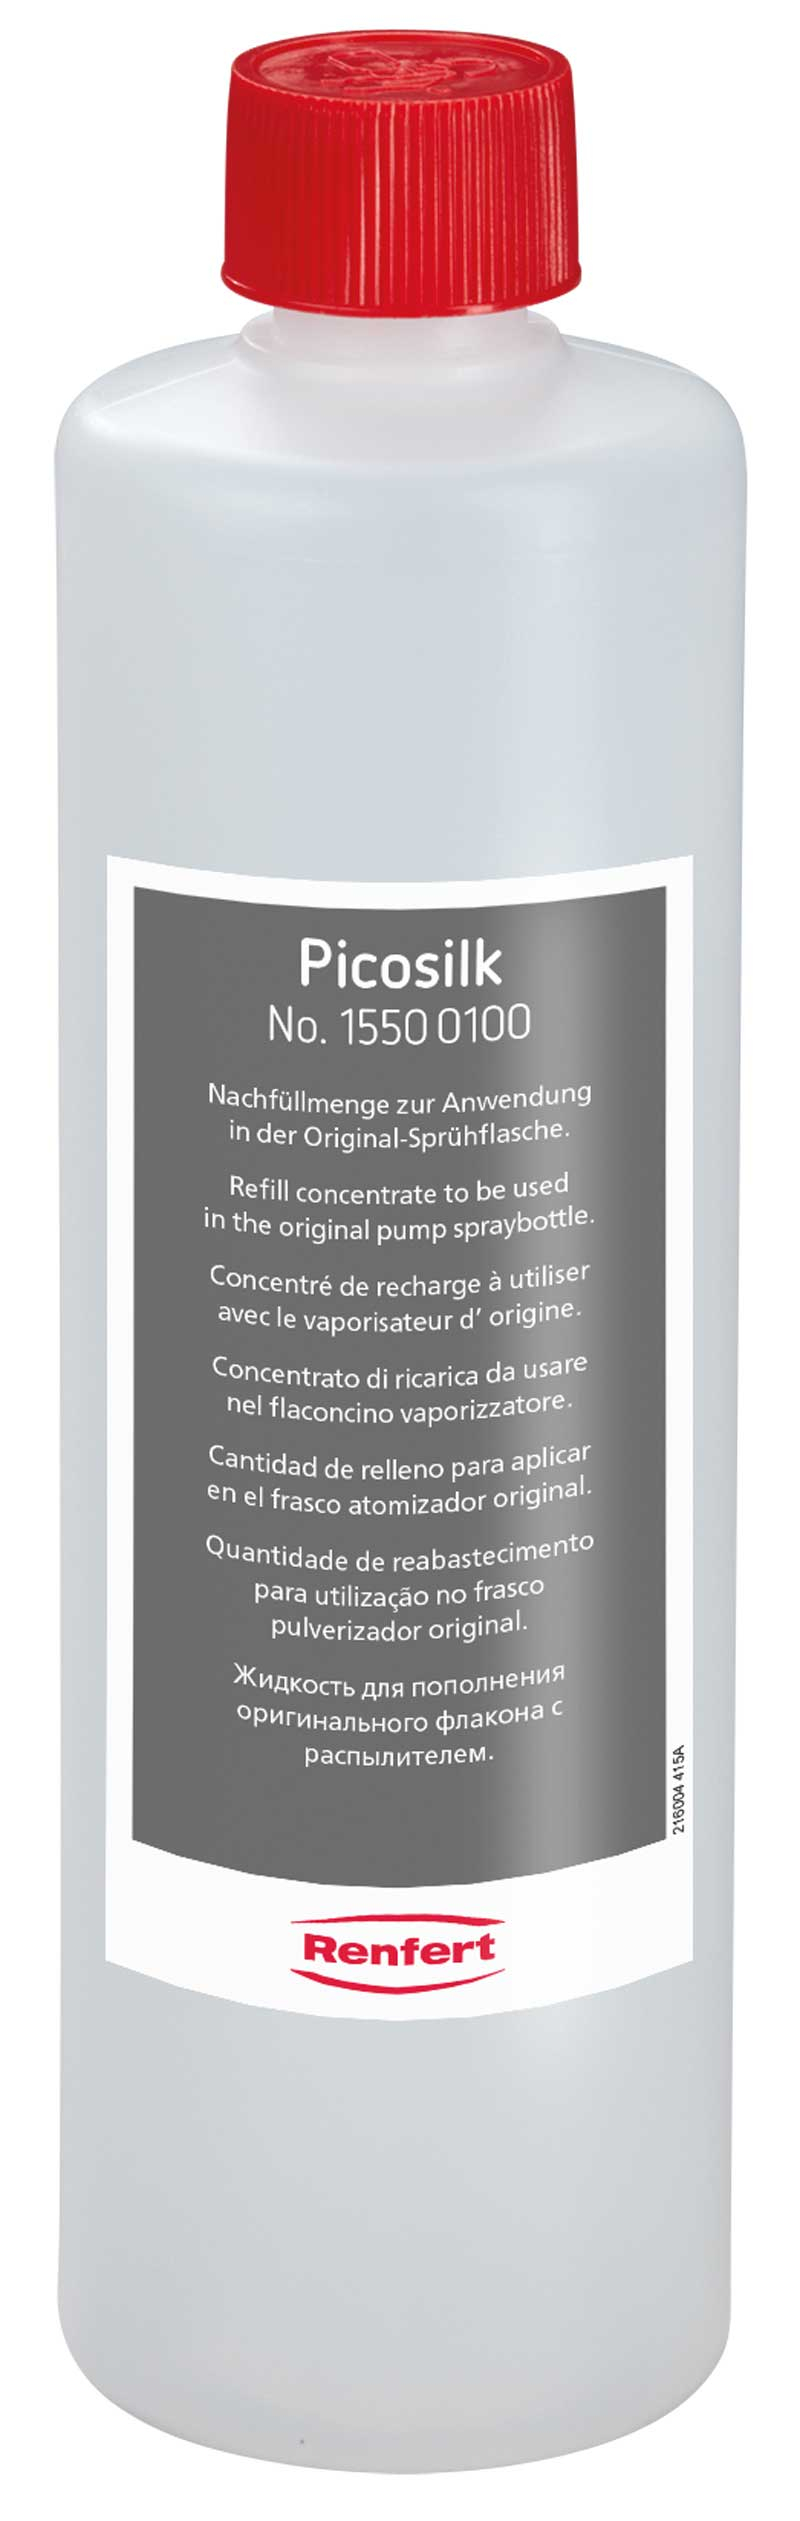 Picosilk   01-373